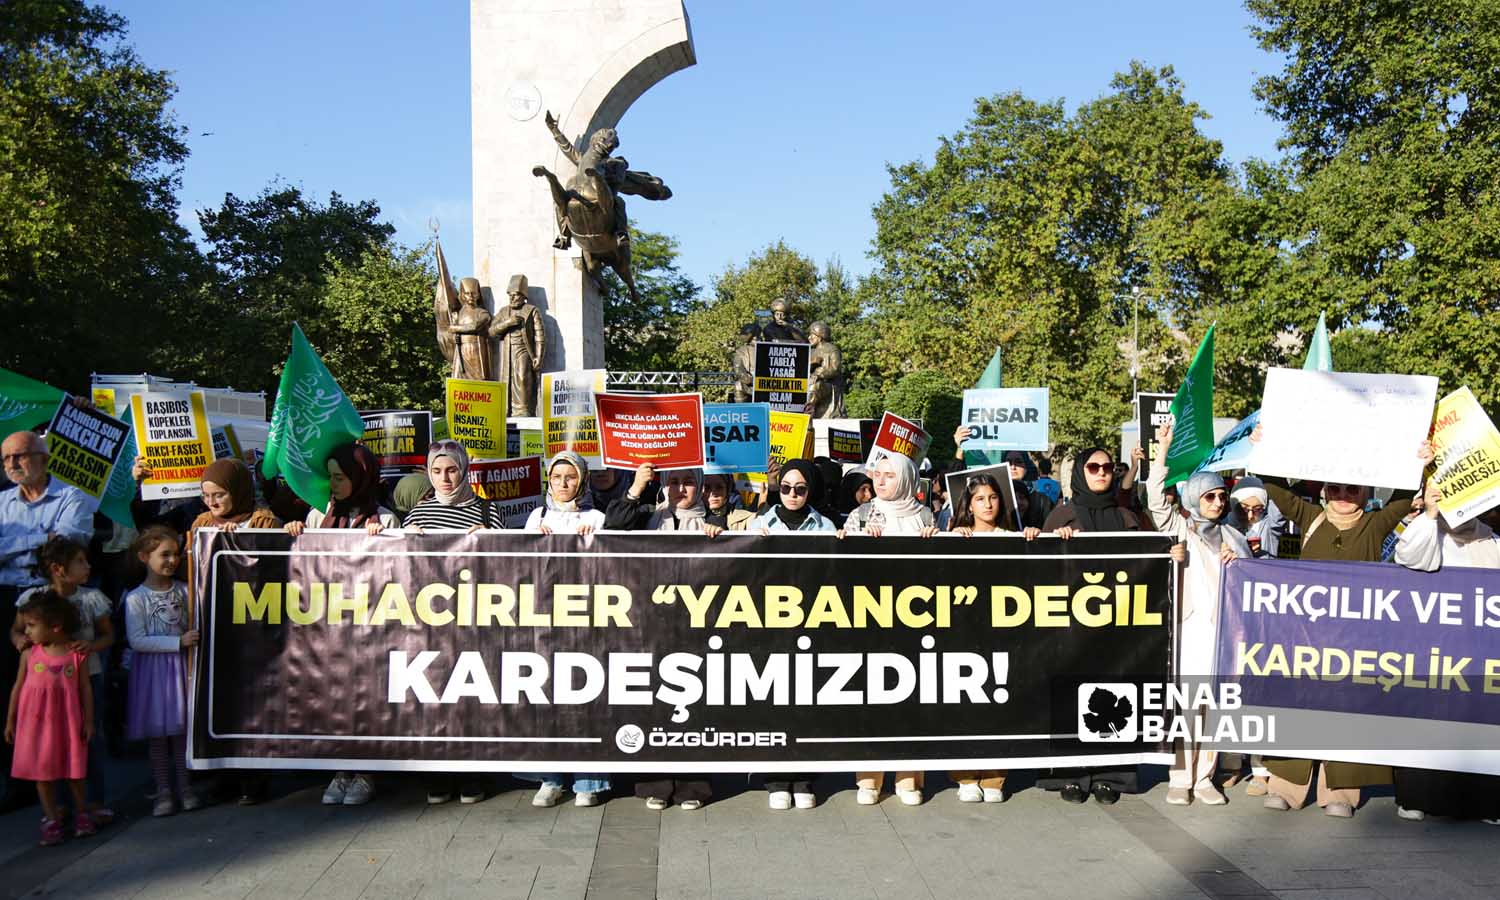 ناشطون يرفعون لوحات تندد بالعنصرية، وكتب عاللوحة السوداء عبارة"المهاجرين ليسوا غرباء بل هم اخواتنا"- اسطنبول 16 من أيلول 2023 (عنب بلدي- يوسف حمّص)